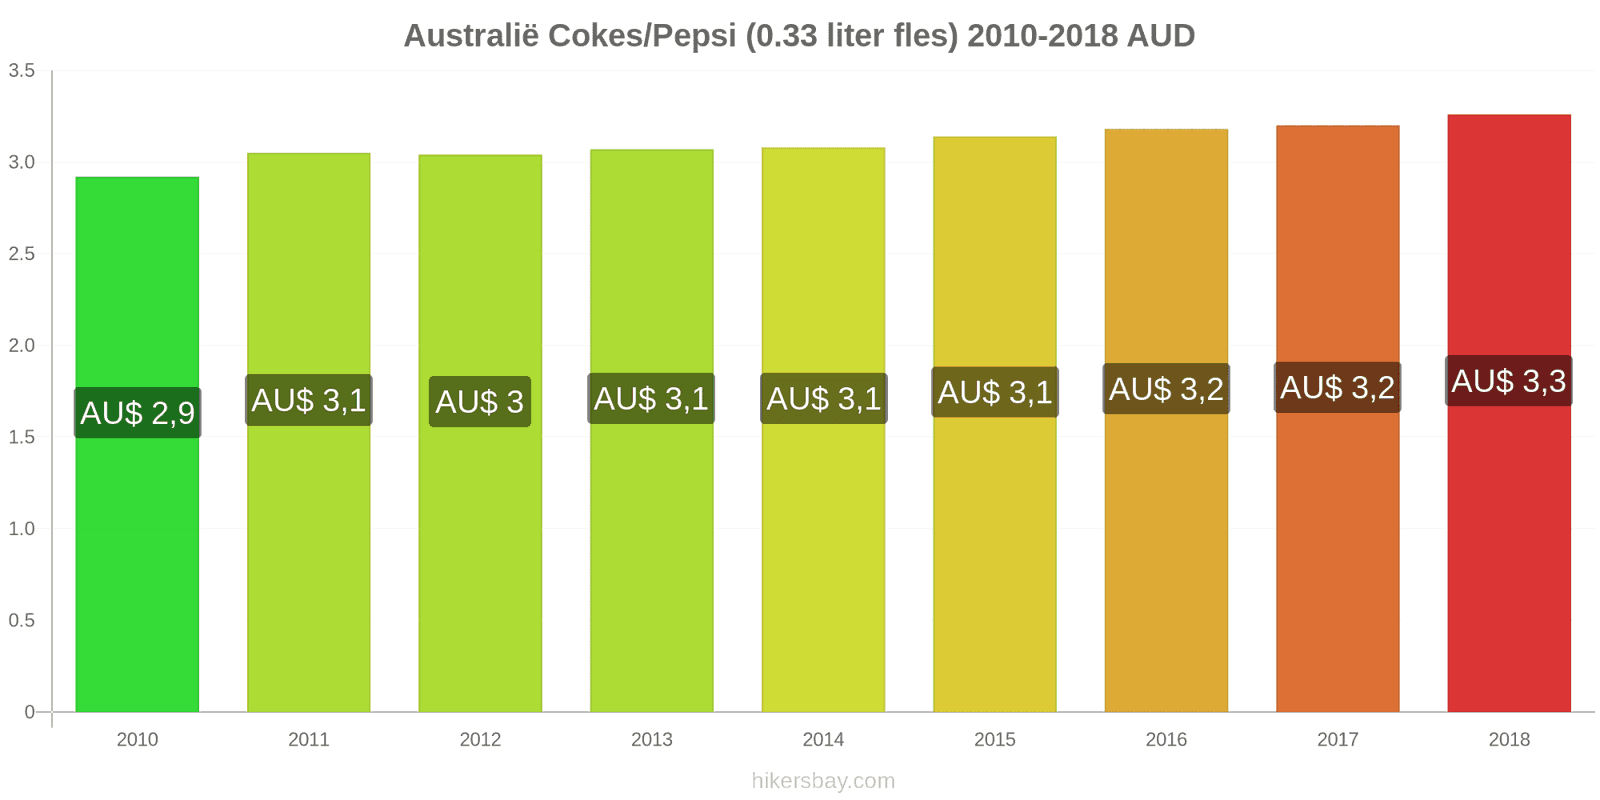 Australië prijswijzigingen Coca-Cola/Pepsi (0.33 liter fles) hikersbay.com